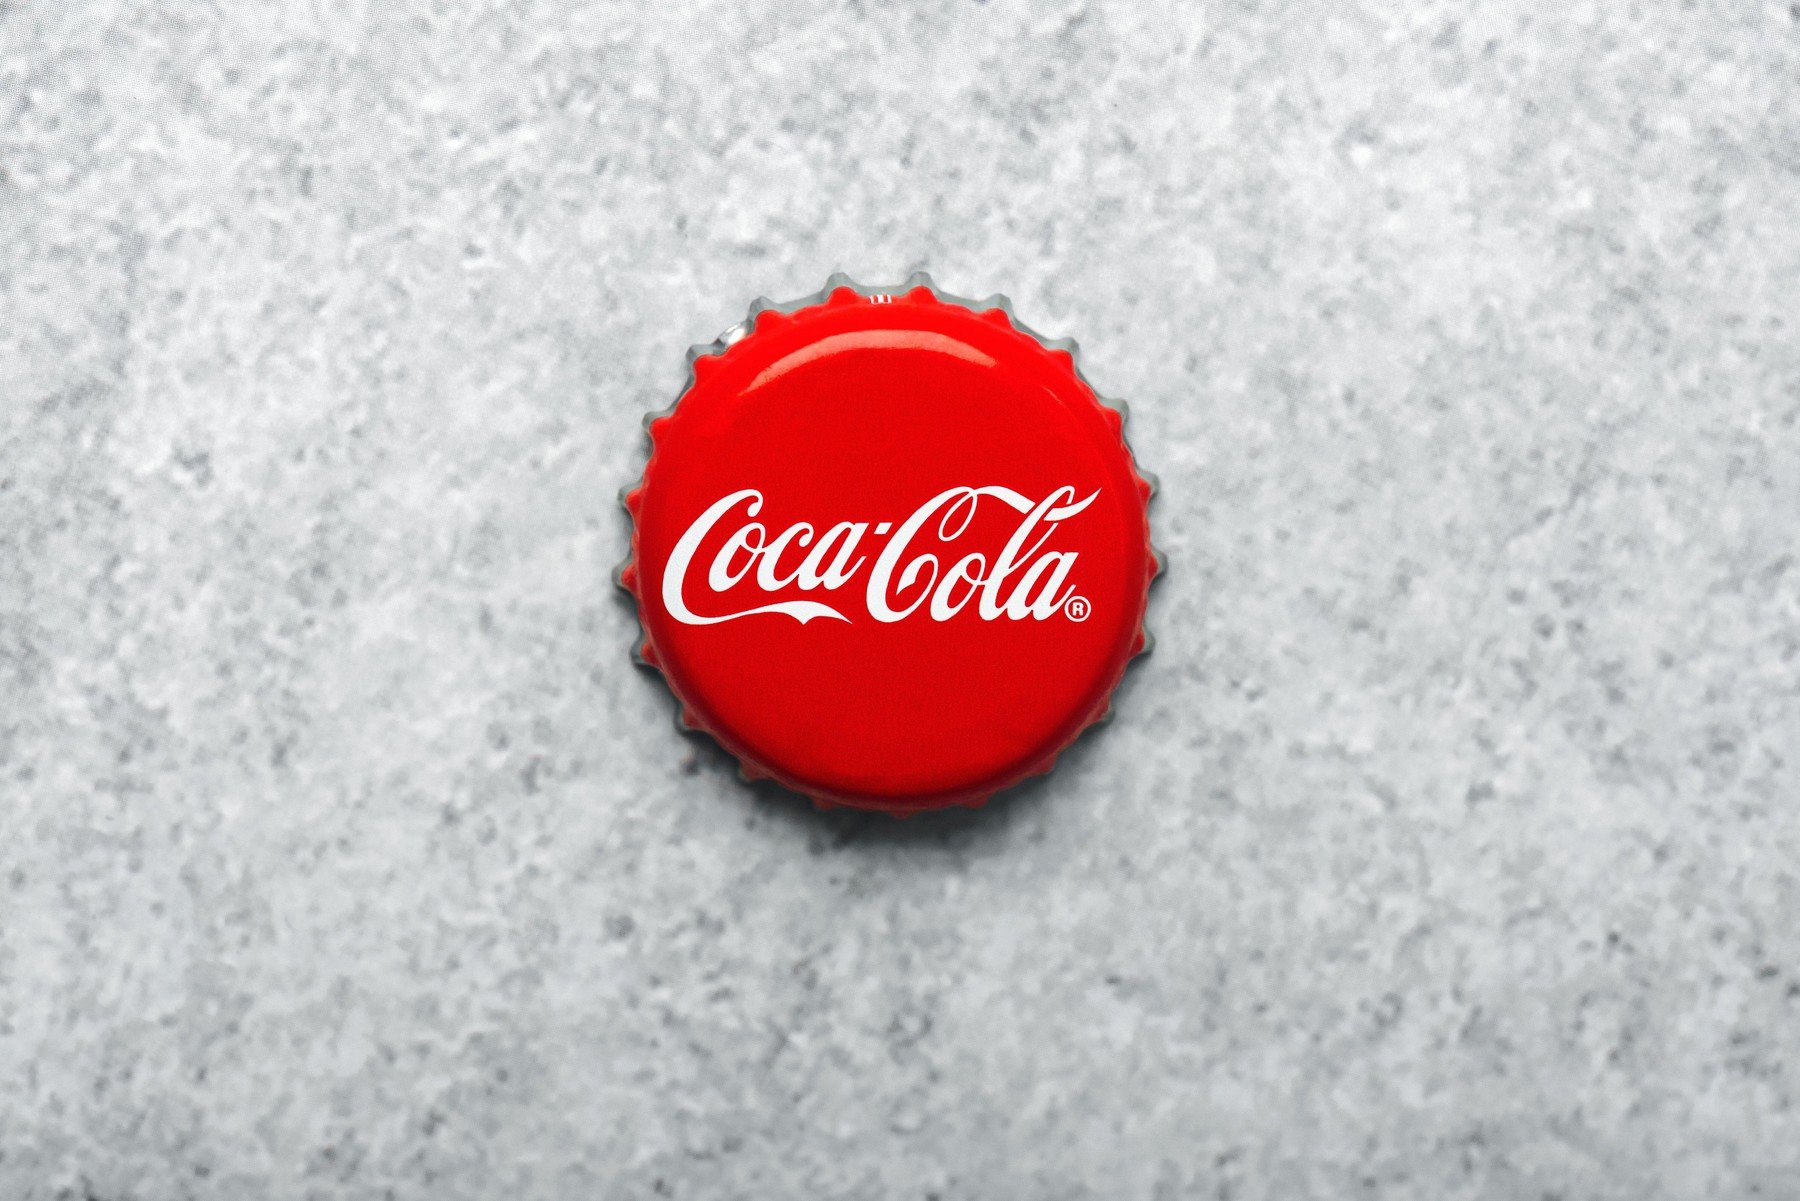 Mi a közös a Coca-Colában és a politikai választásokban?